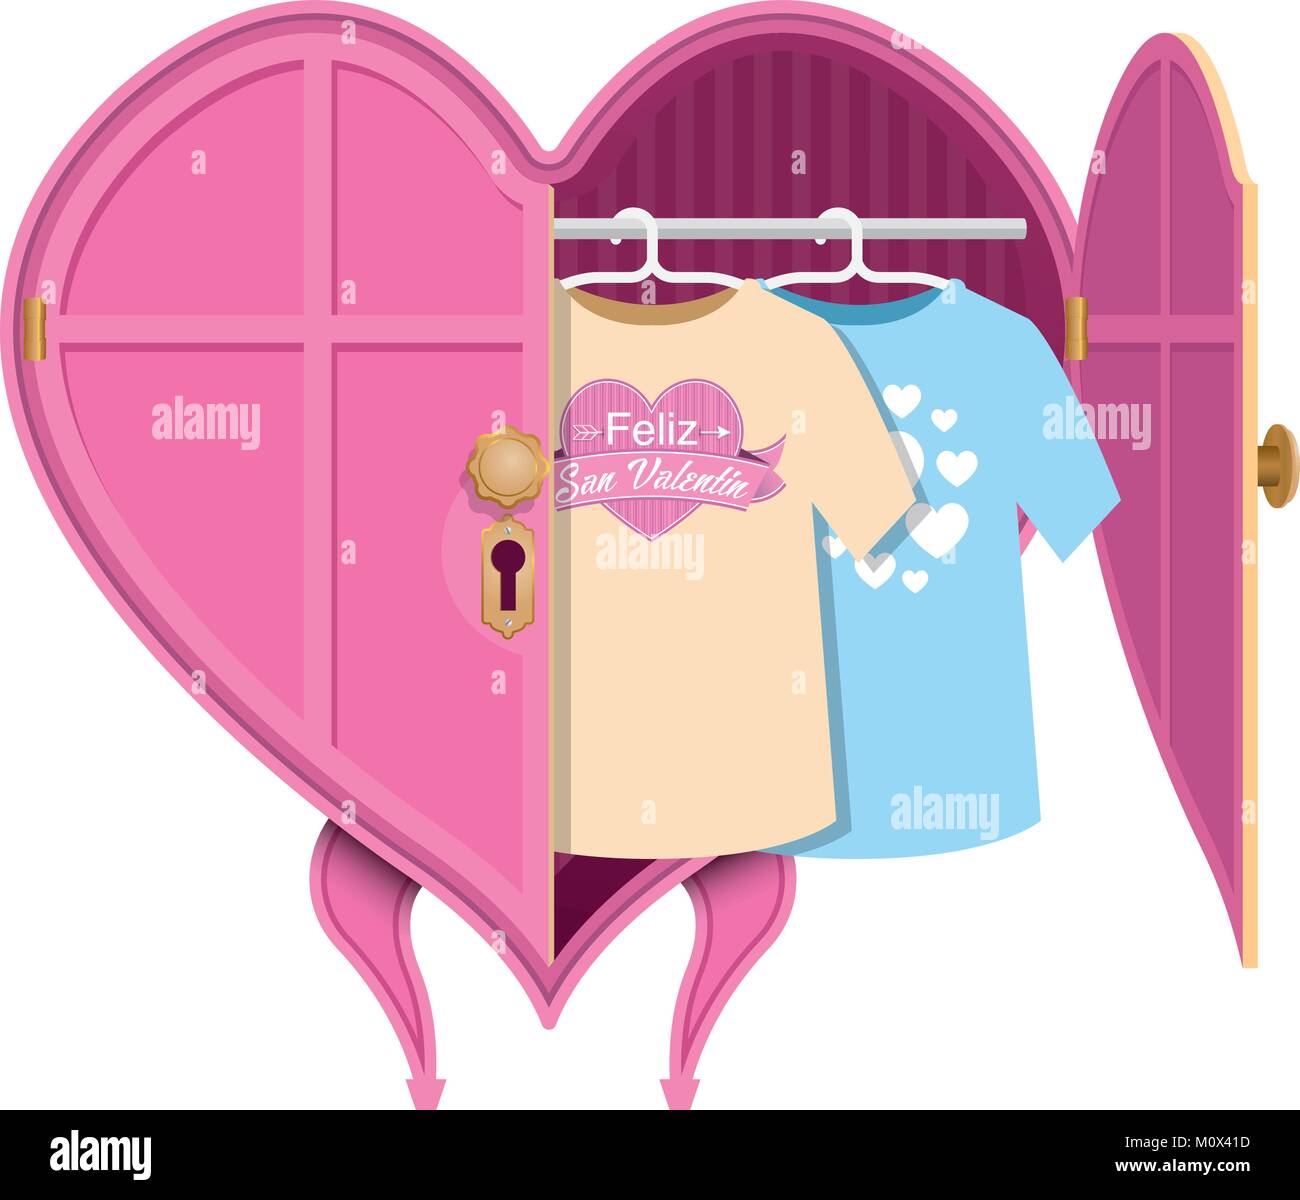 Rosa herzförmige Kleiderschrank mit einer offenen Tür, im Inneren gibt es zwei Hemden mit der Meldung: Feliz San Valentin Stock Vektor